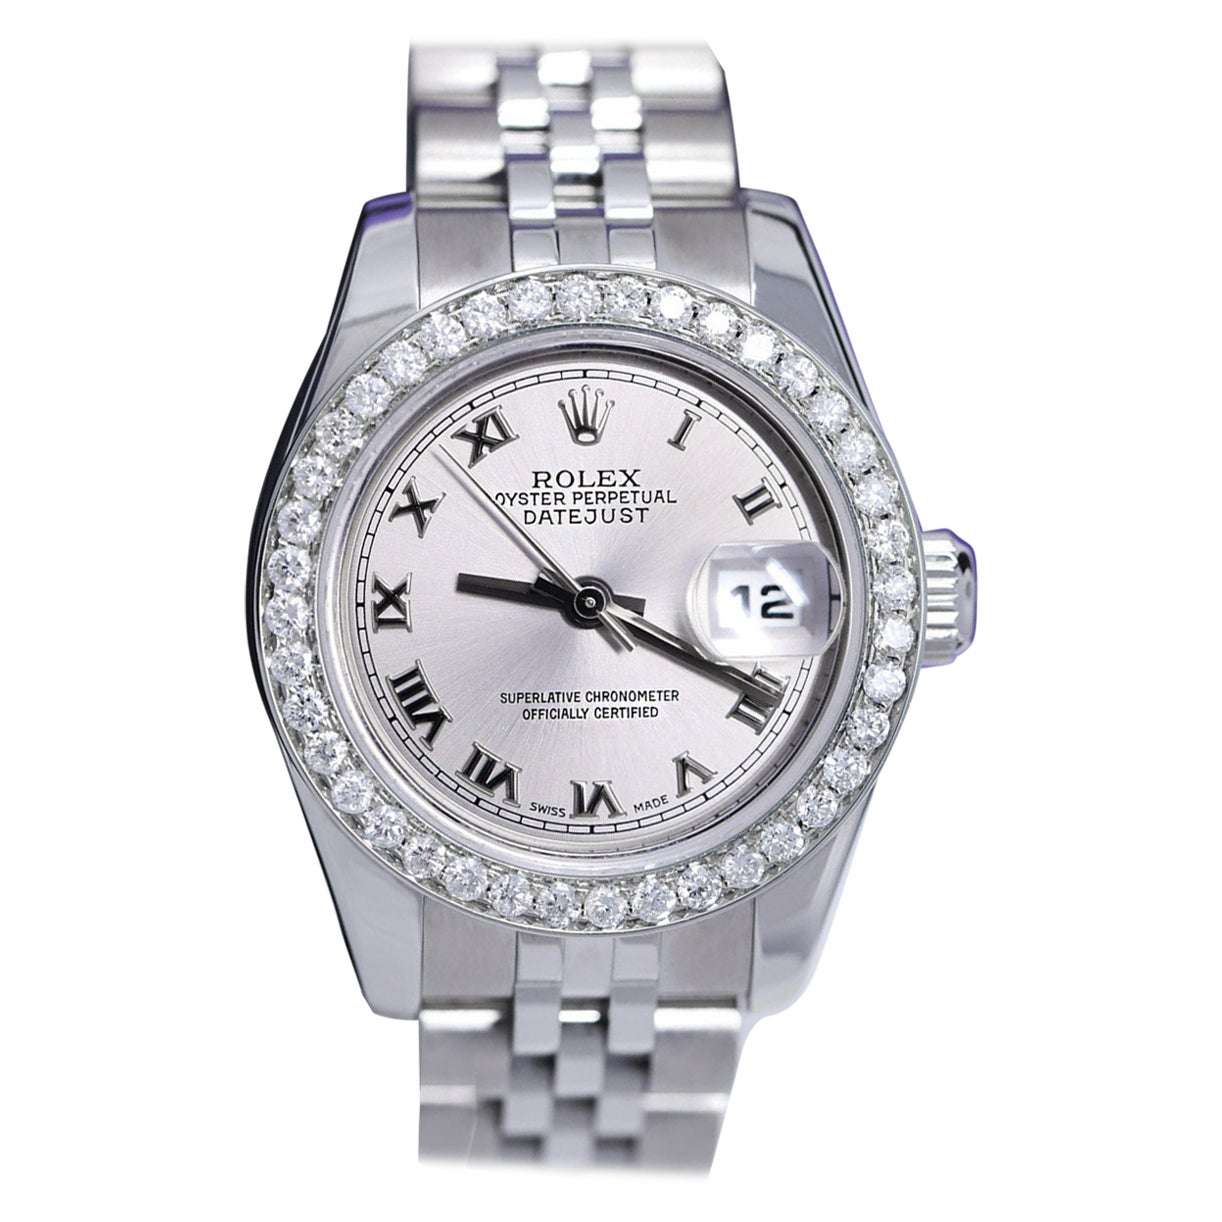 Rolex Lady-Datejust 179174 Steel Silver Roman Dial Diamond Bezel Watch